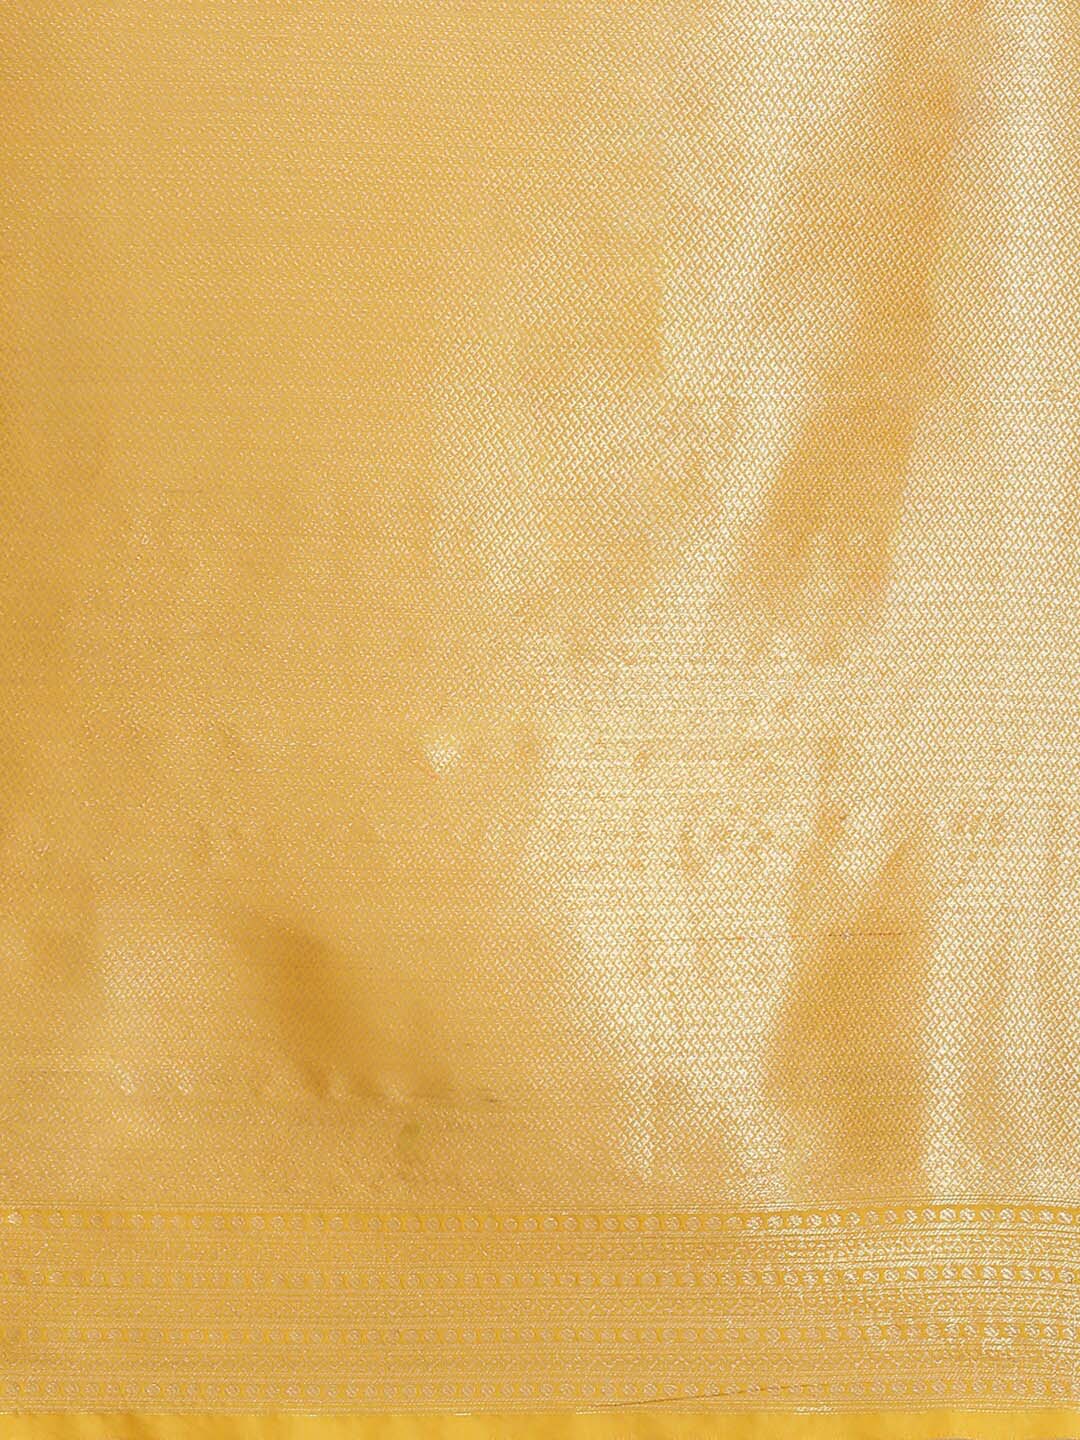 Indethnic Banarasi Yellow Woven Design Daily Wear Saree - Saree Detail View